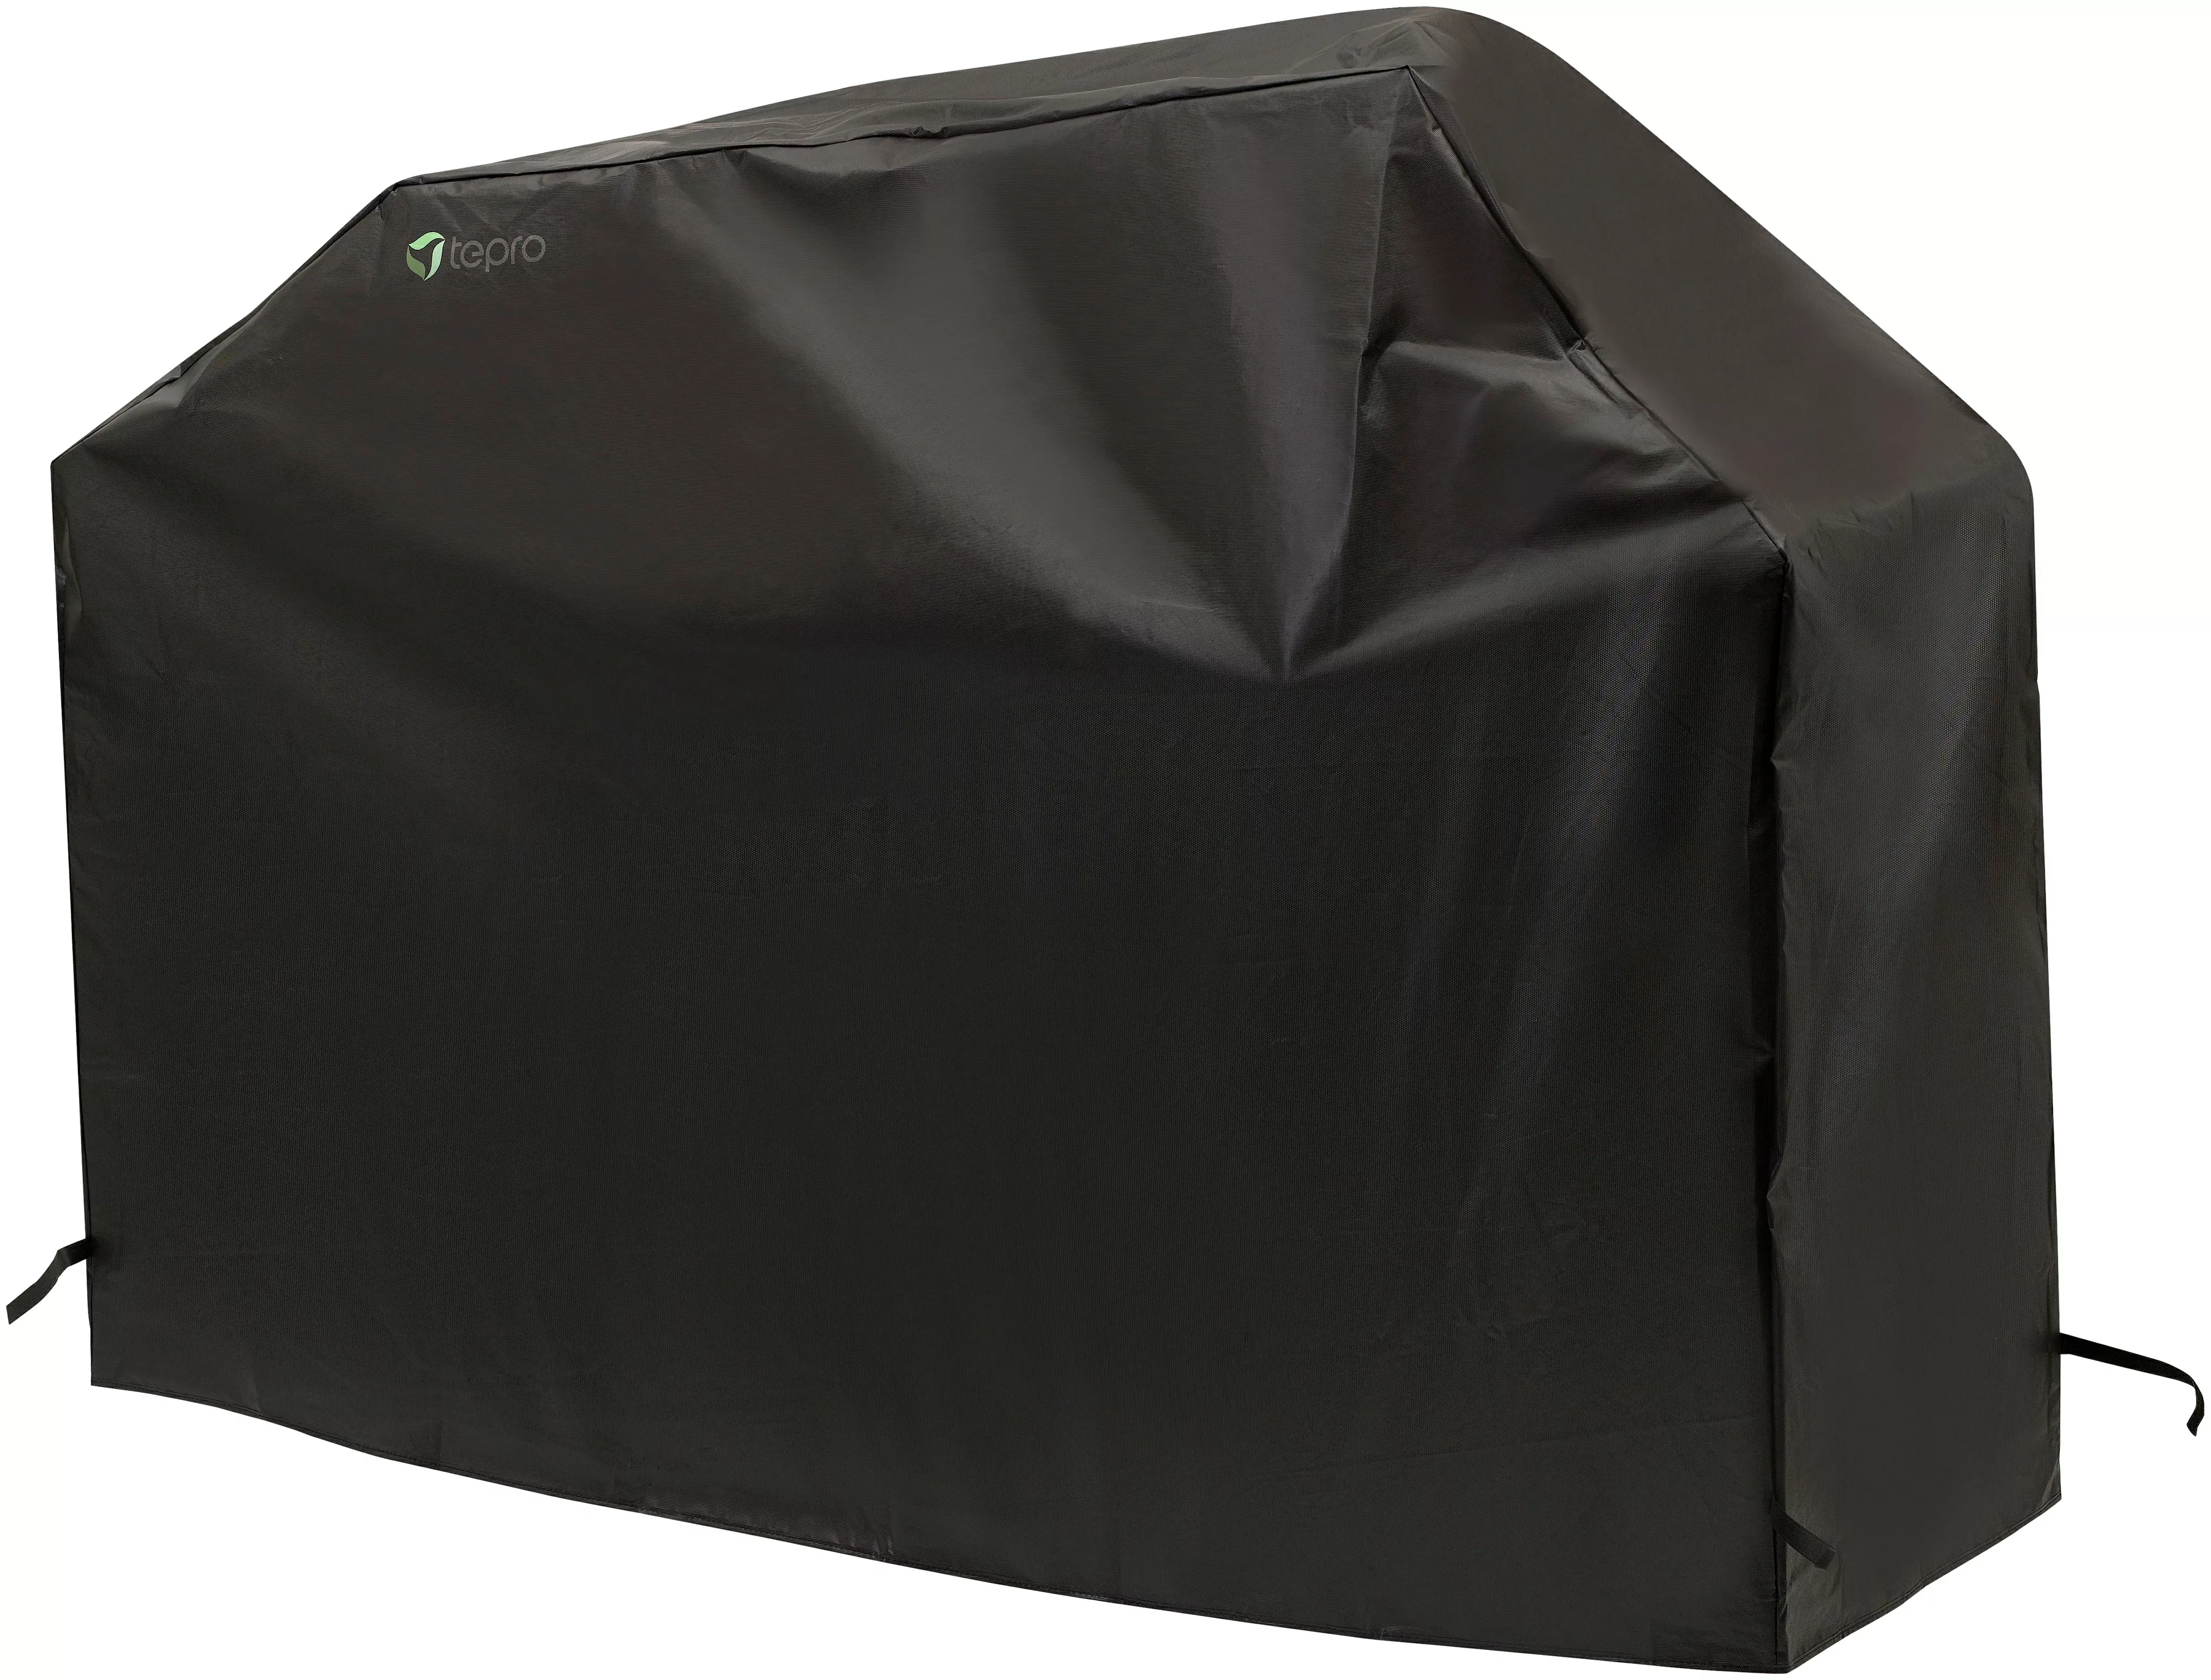 Tepro Grill-Schutzhülle, BxLxH: 178x56x129 cm, für Gasgrill extra groß günstig online kaufen